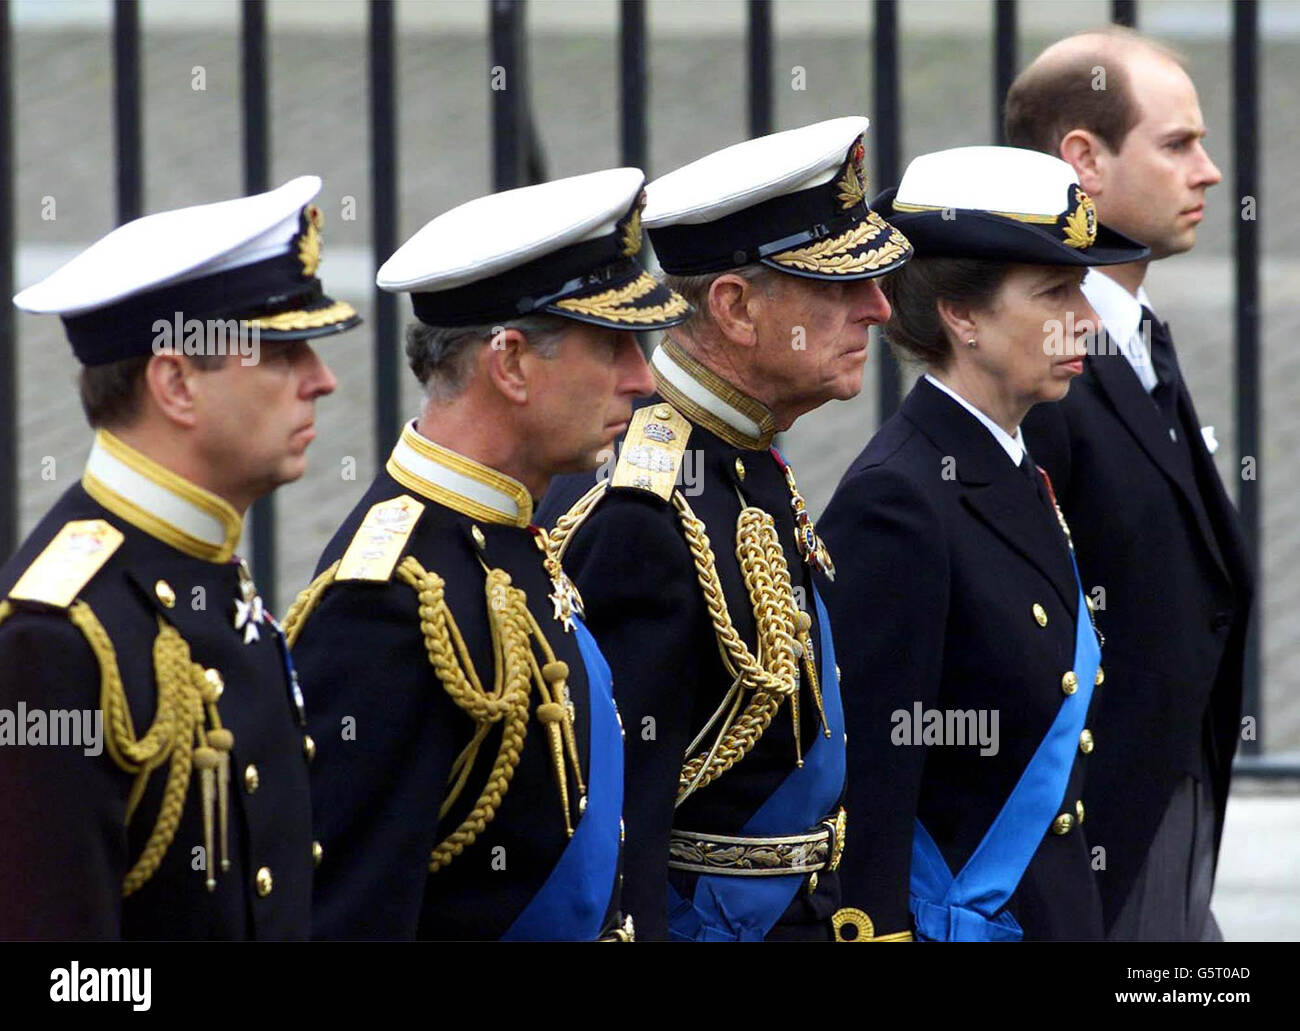 Des membres de la famille royale britannique suivent le cercueil de la reine mère en chemin vers ses funérailles à l'abbaye de Westminster à Londres, (L-R) le duc d'York, le prince de Galles, le duc d'Édimbourg, la princesse royale et le comte de Wessex. Banque D'Images